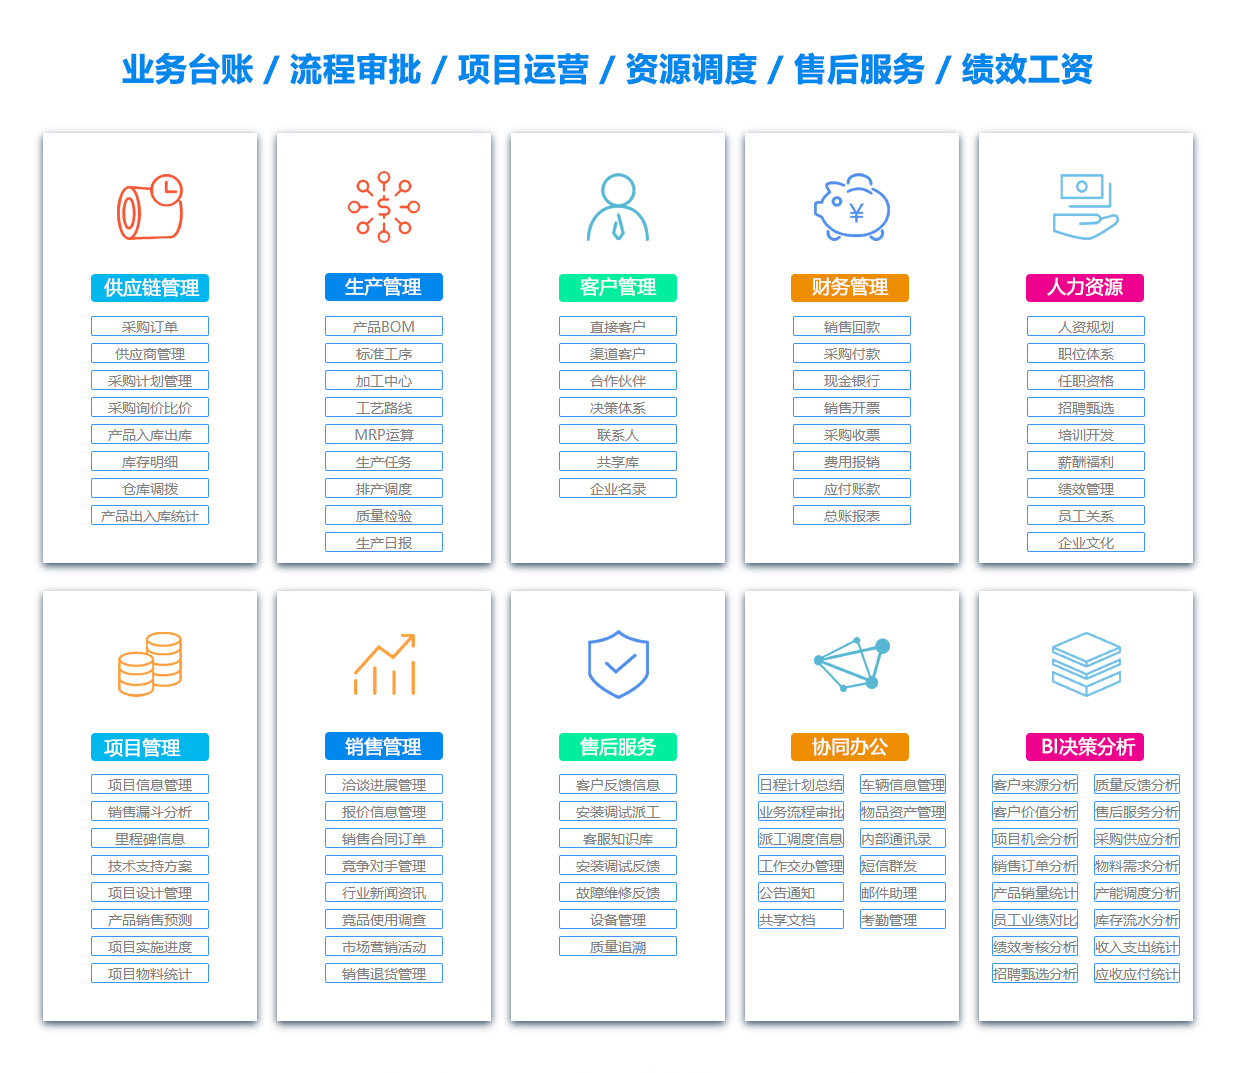 广州BOM:物料清单软件